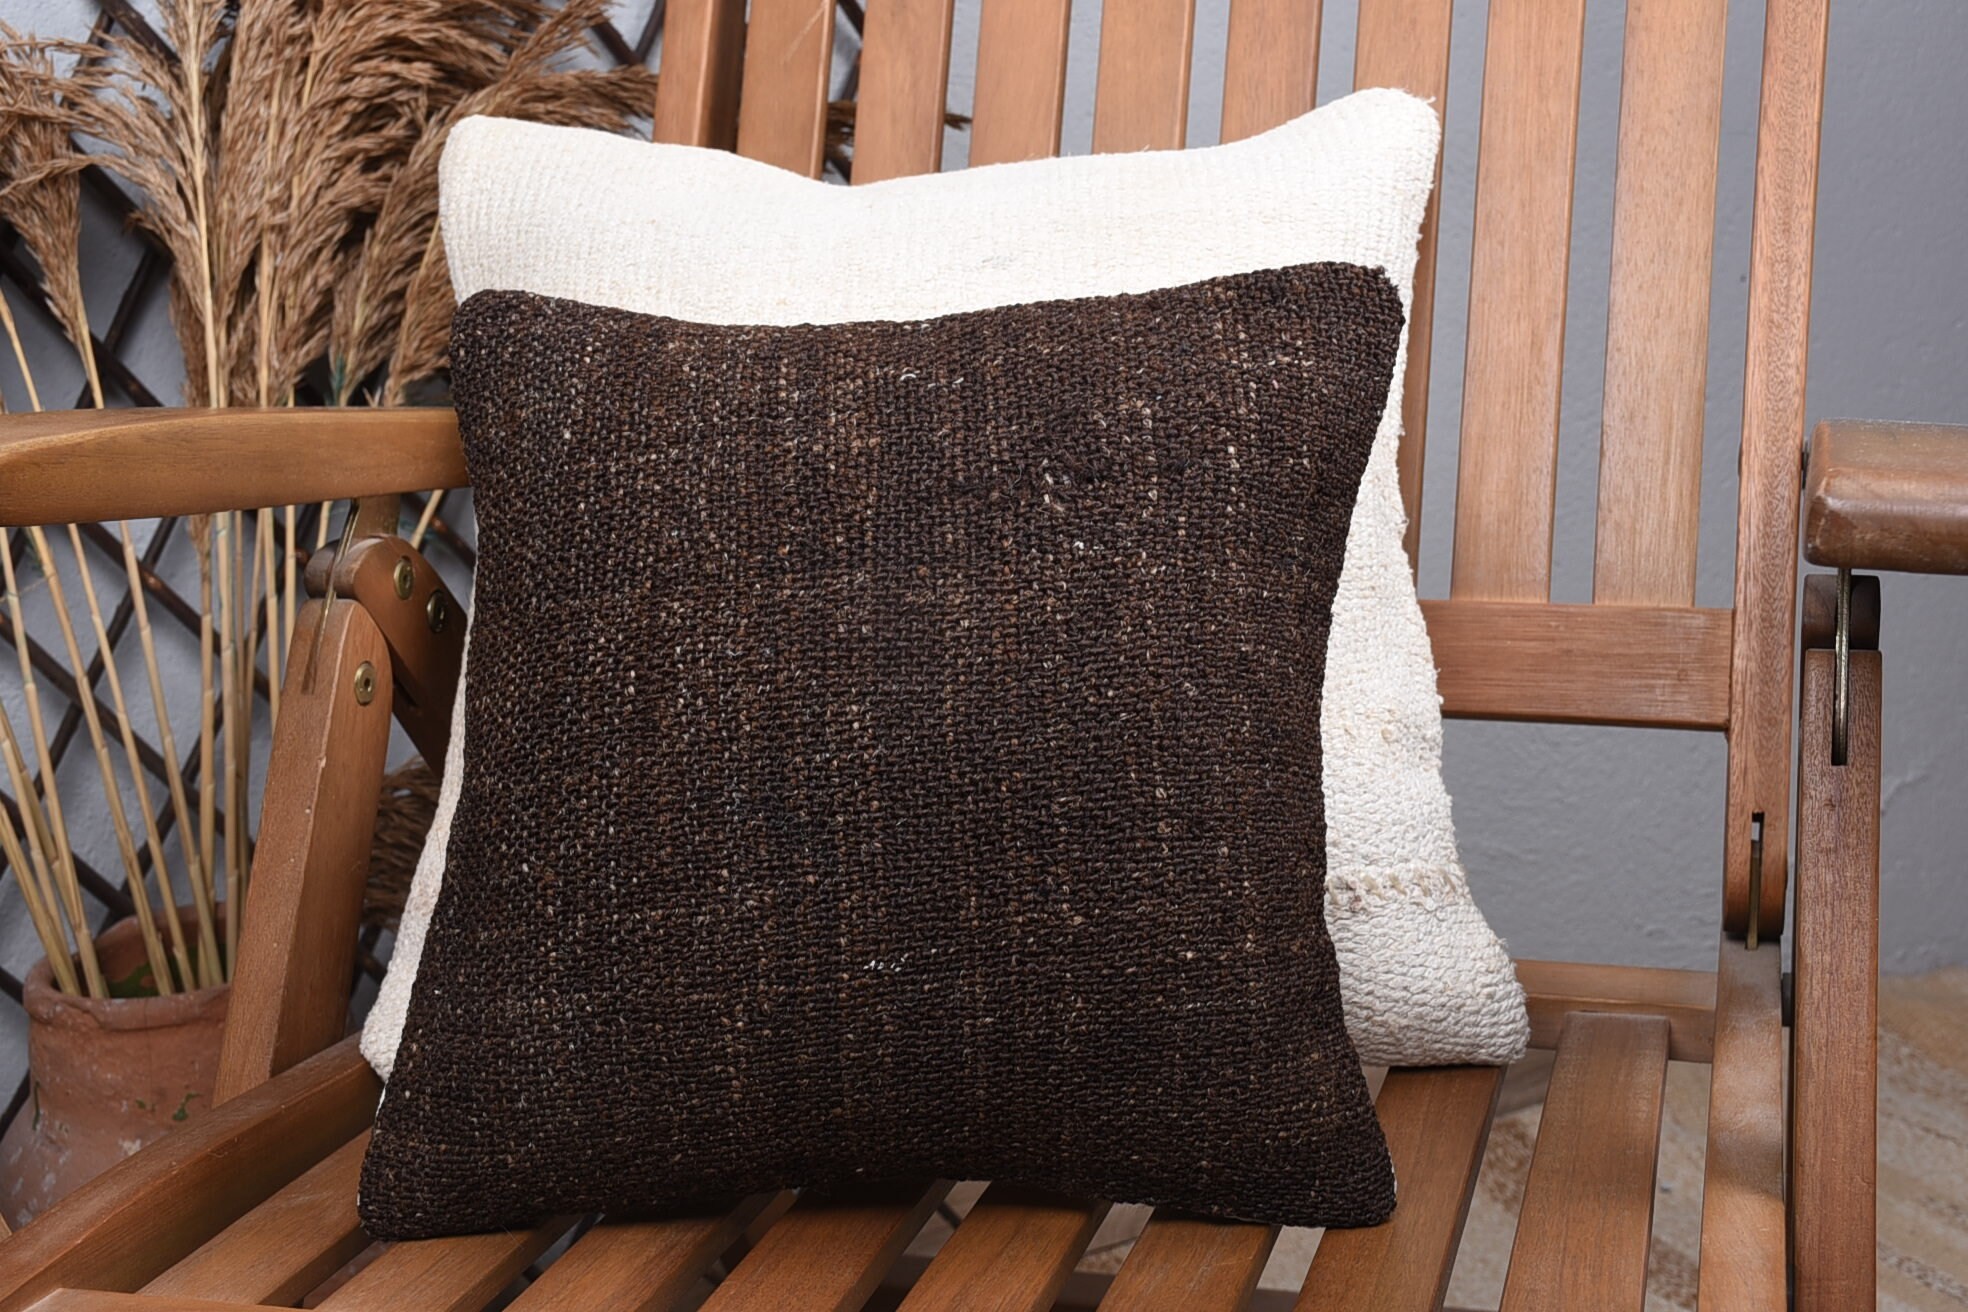 12"x12" Brown Cushion Cover, Cozy Throw Pillow, Kilim Pillow, Antique Pillows, Vintage Kilim Pillow, Decorative Bolster Pillow Sham